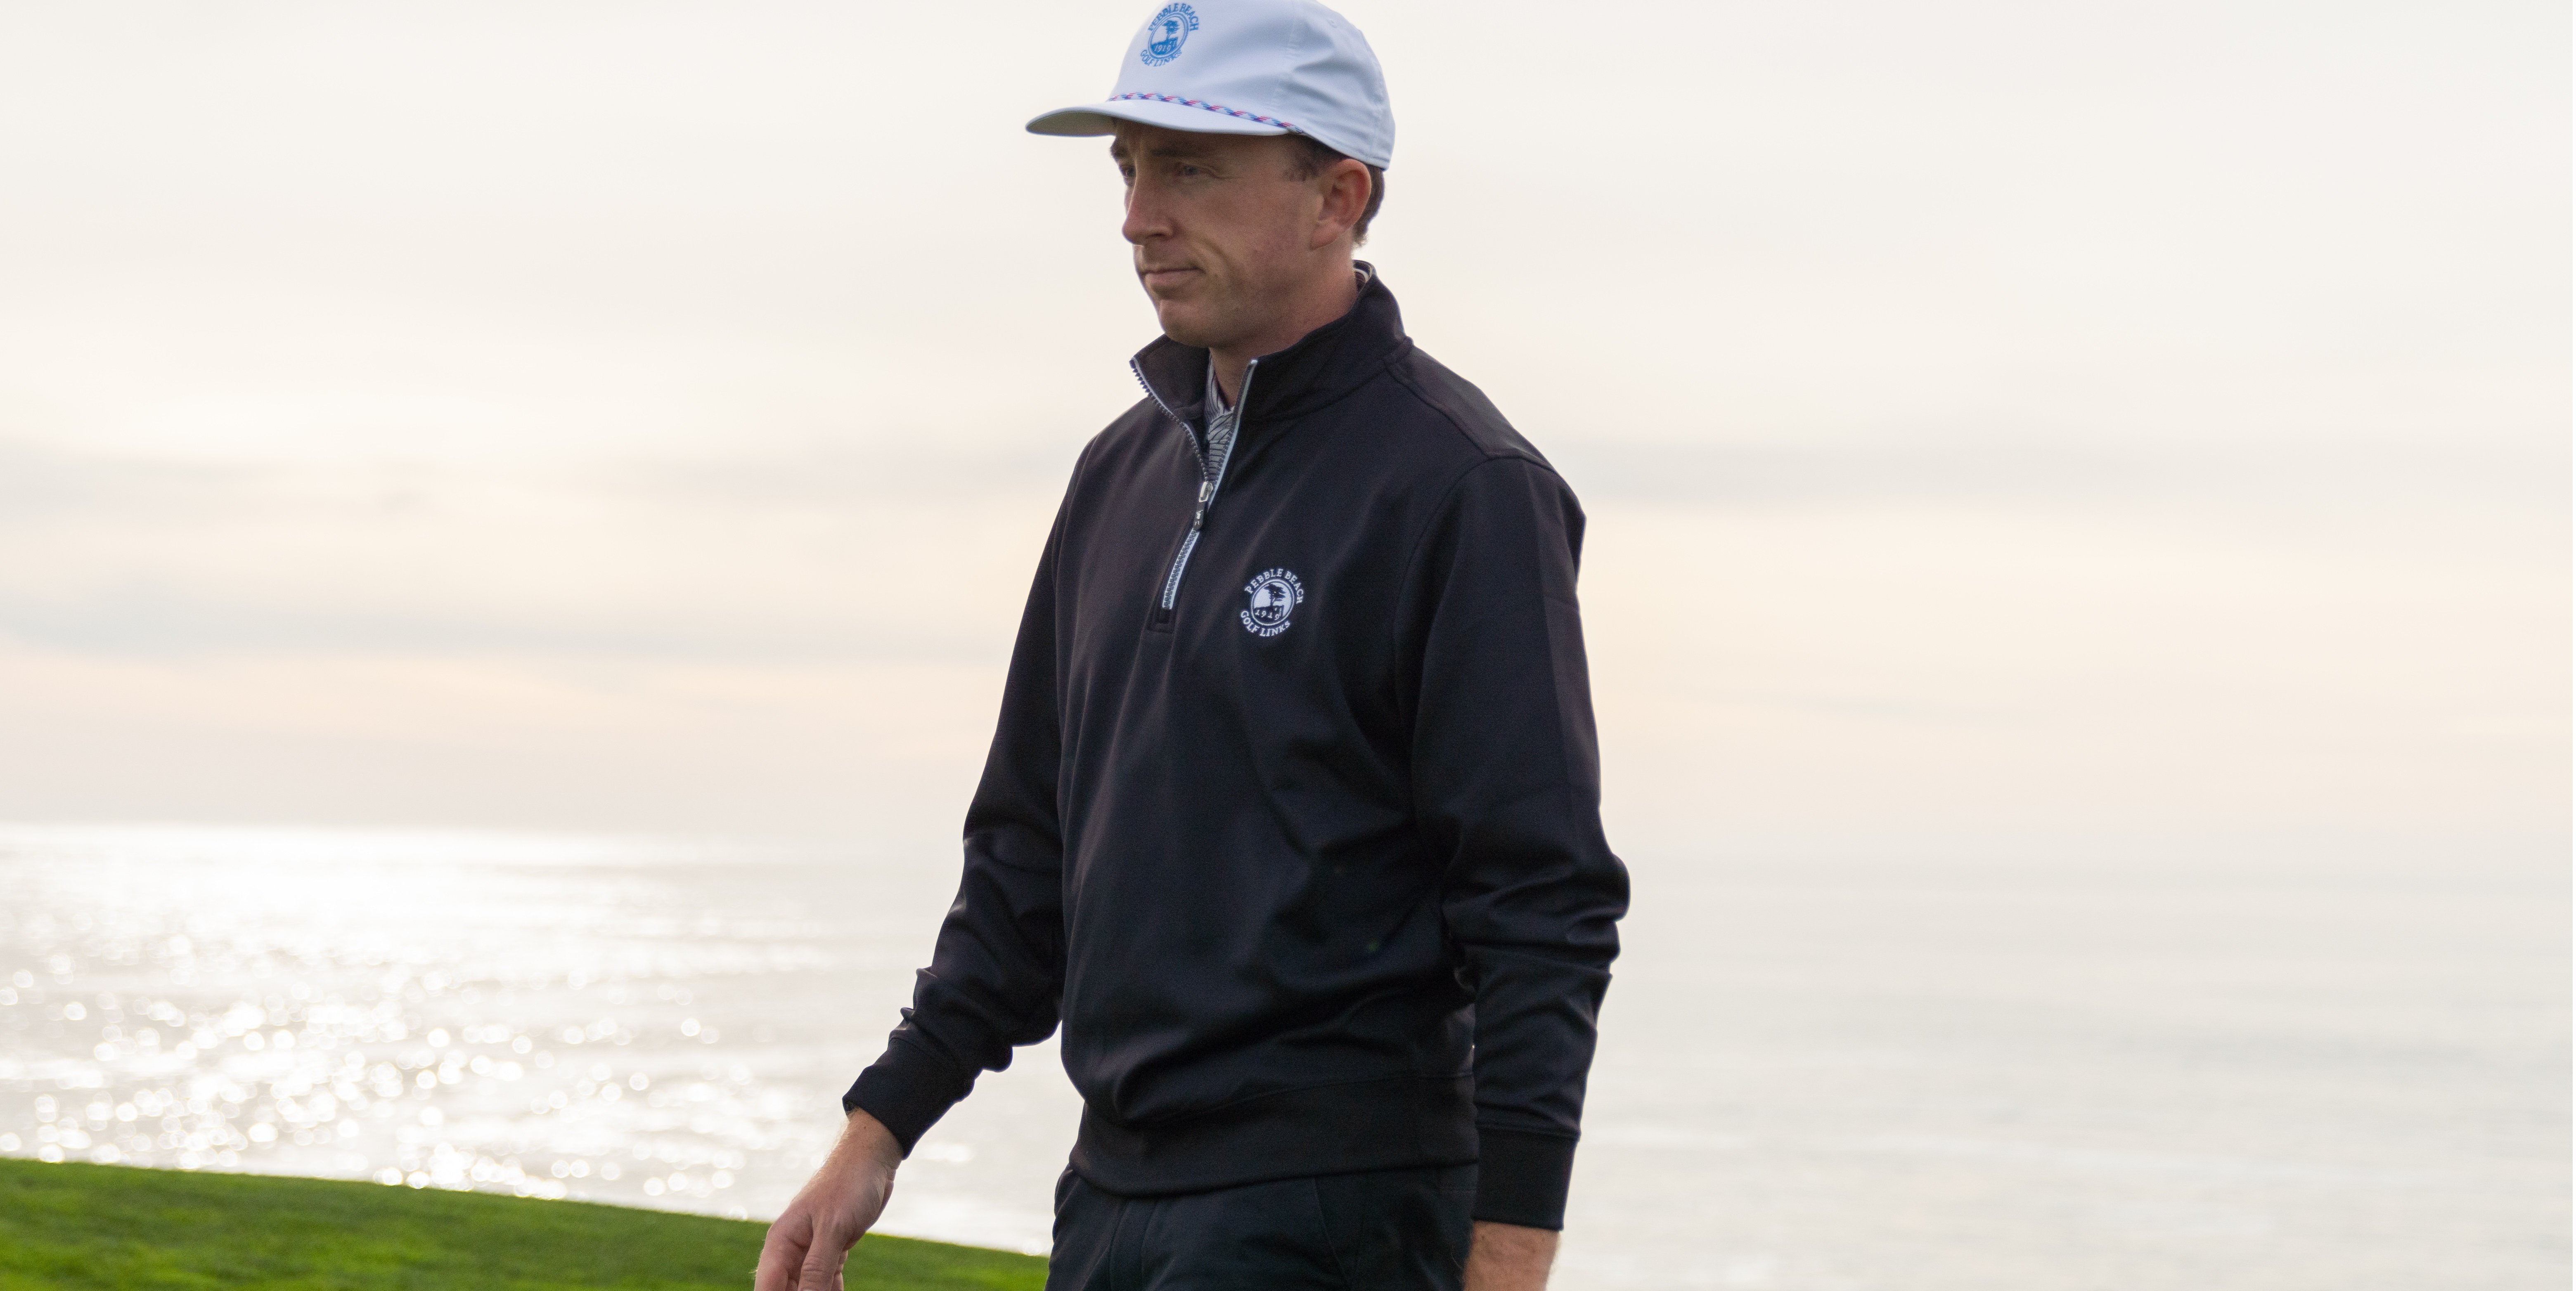 Shop Men's Golf Sweaters  Pebble Beach Shop Online